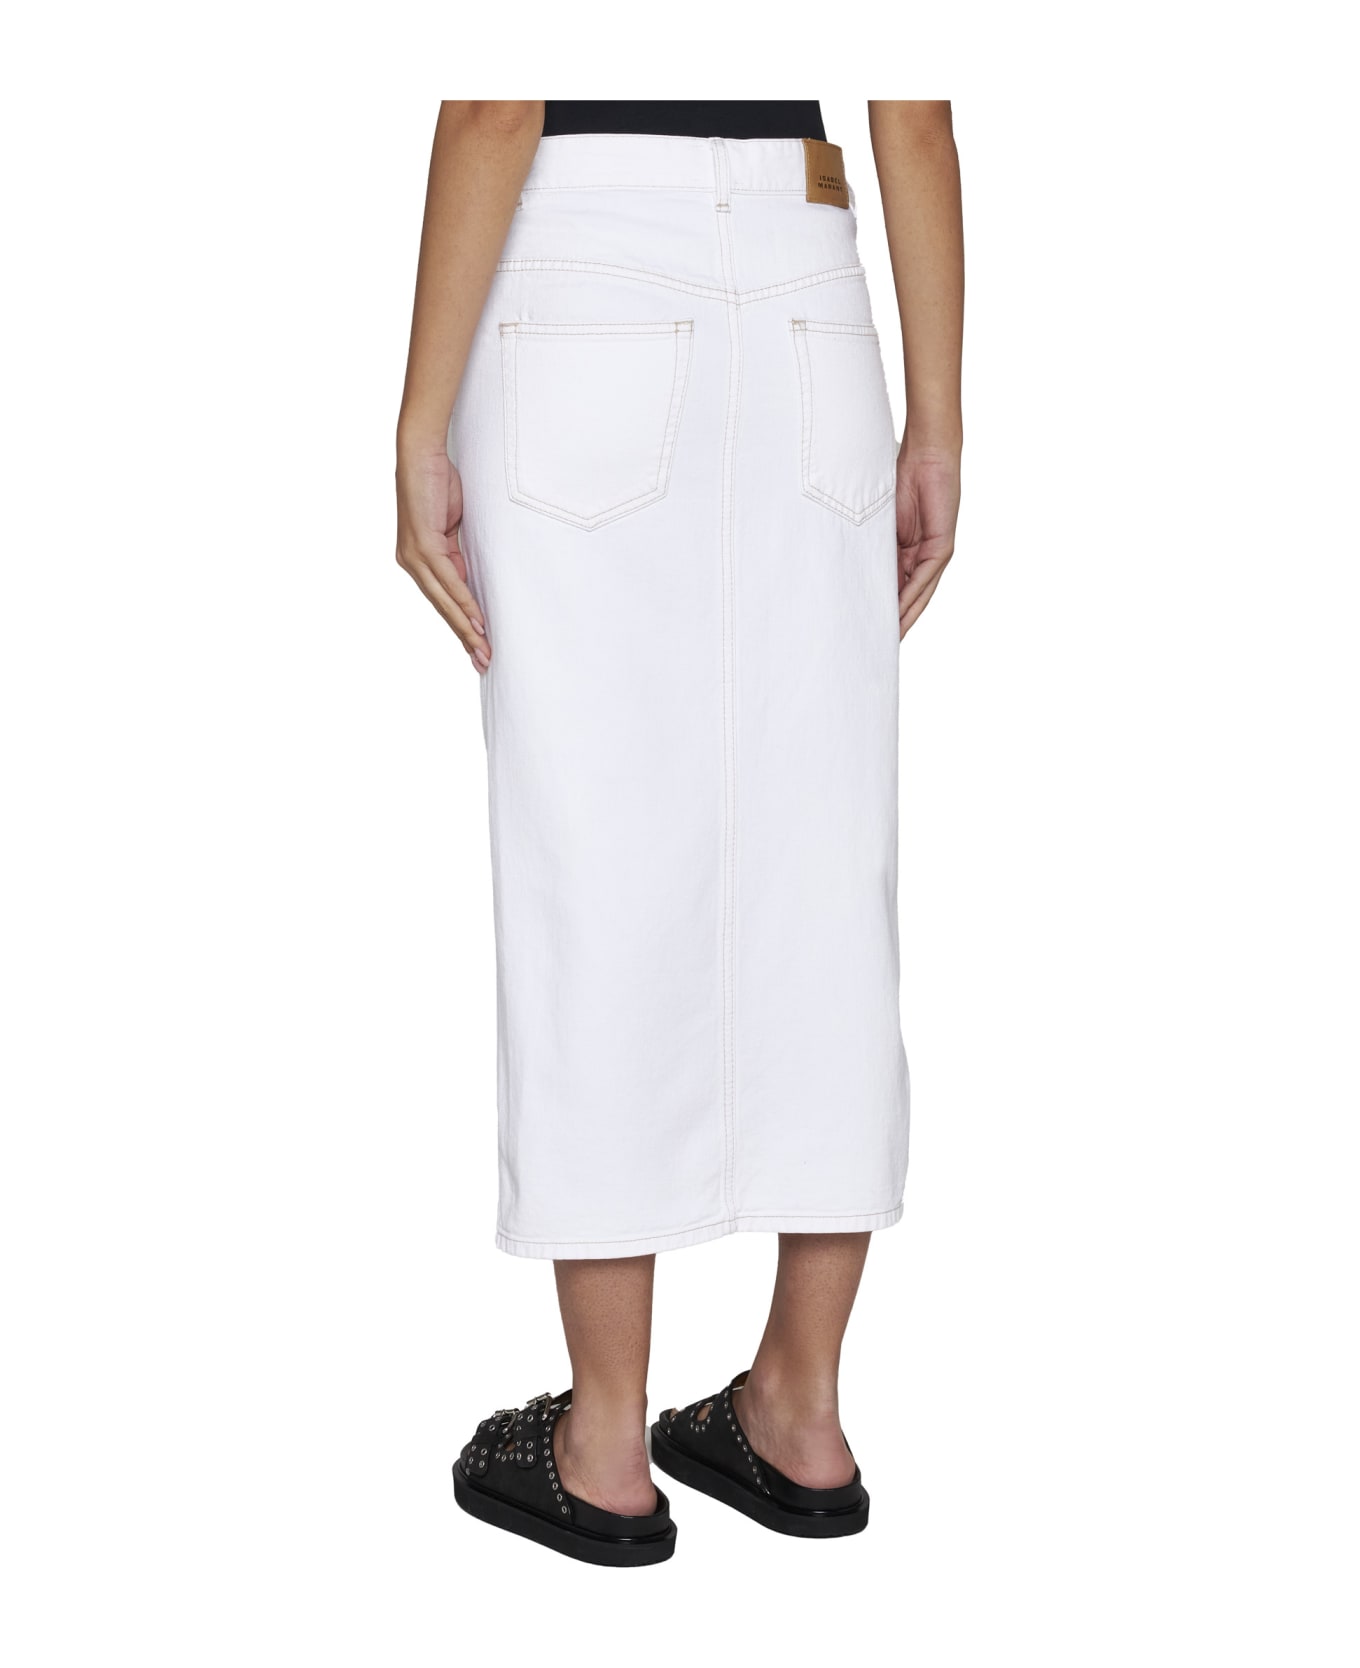 Isabel Marant Skirt - White